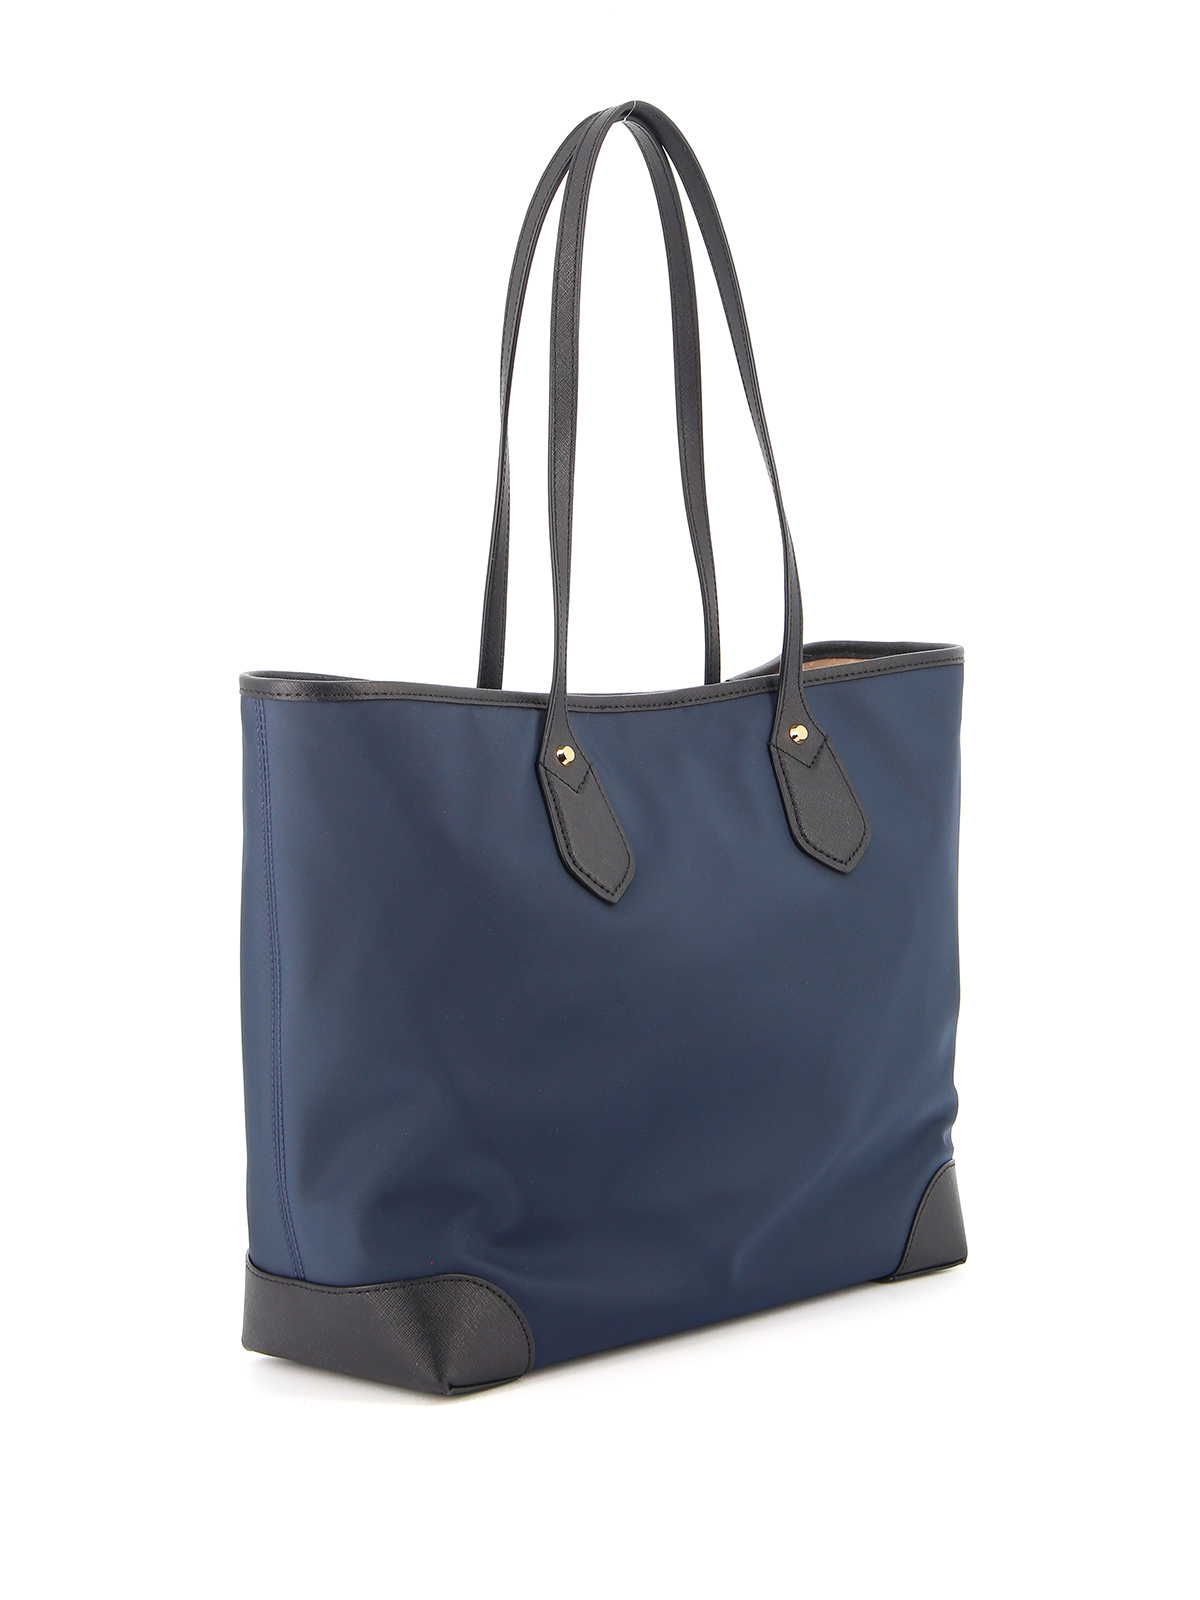 Totes bags Michael Kors - Eva large nylon blue tote bag